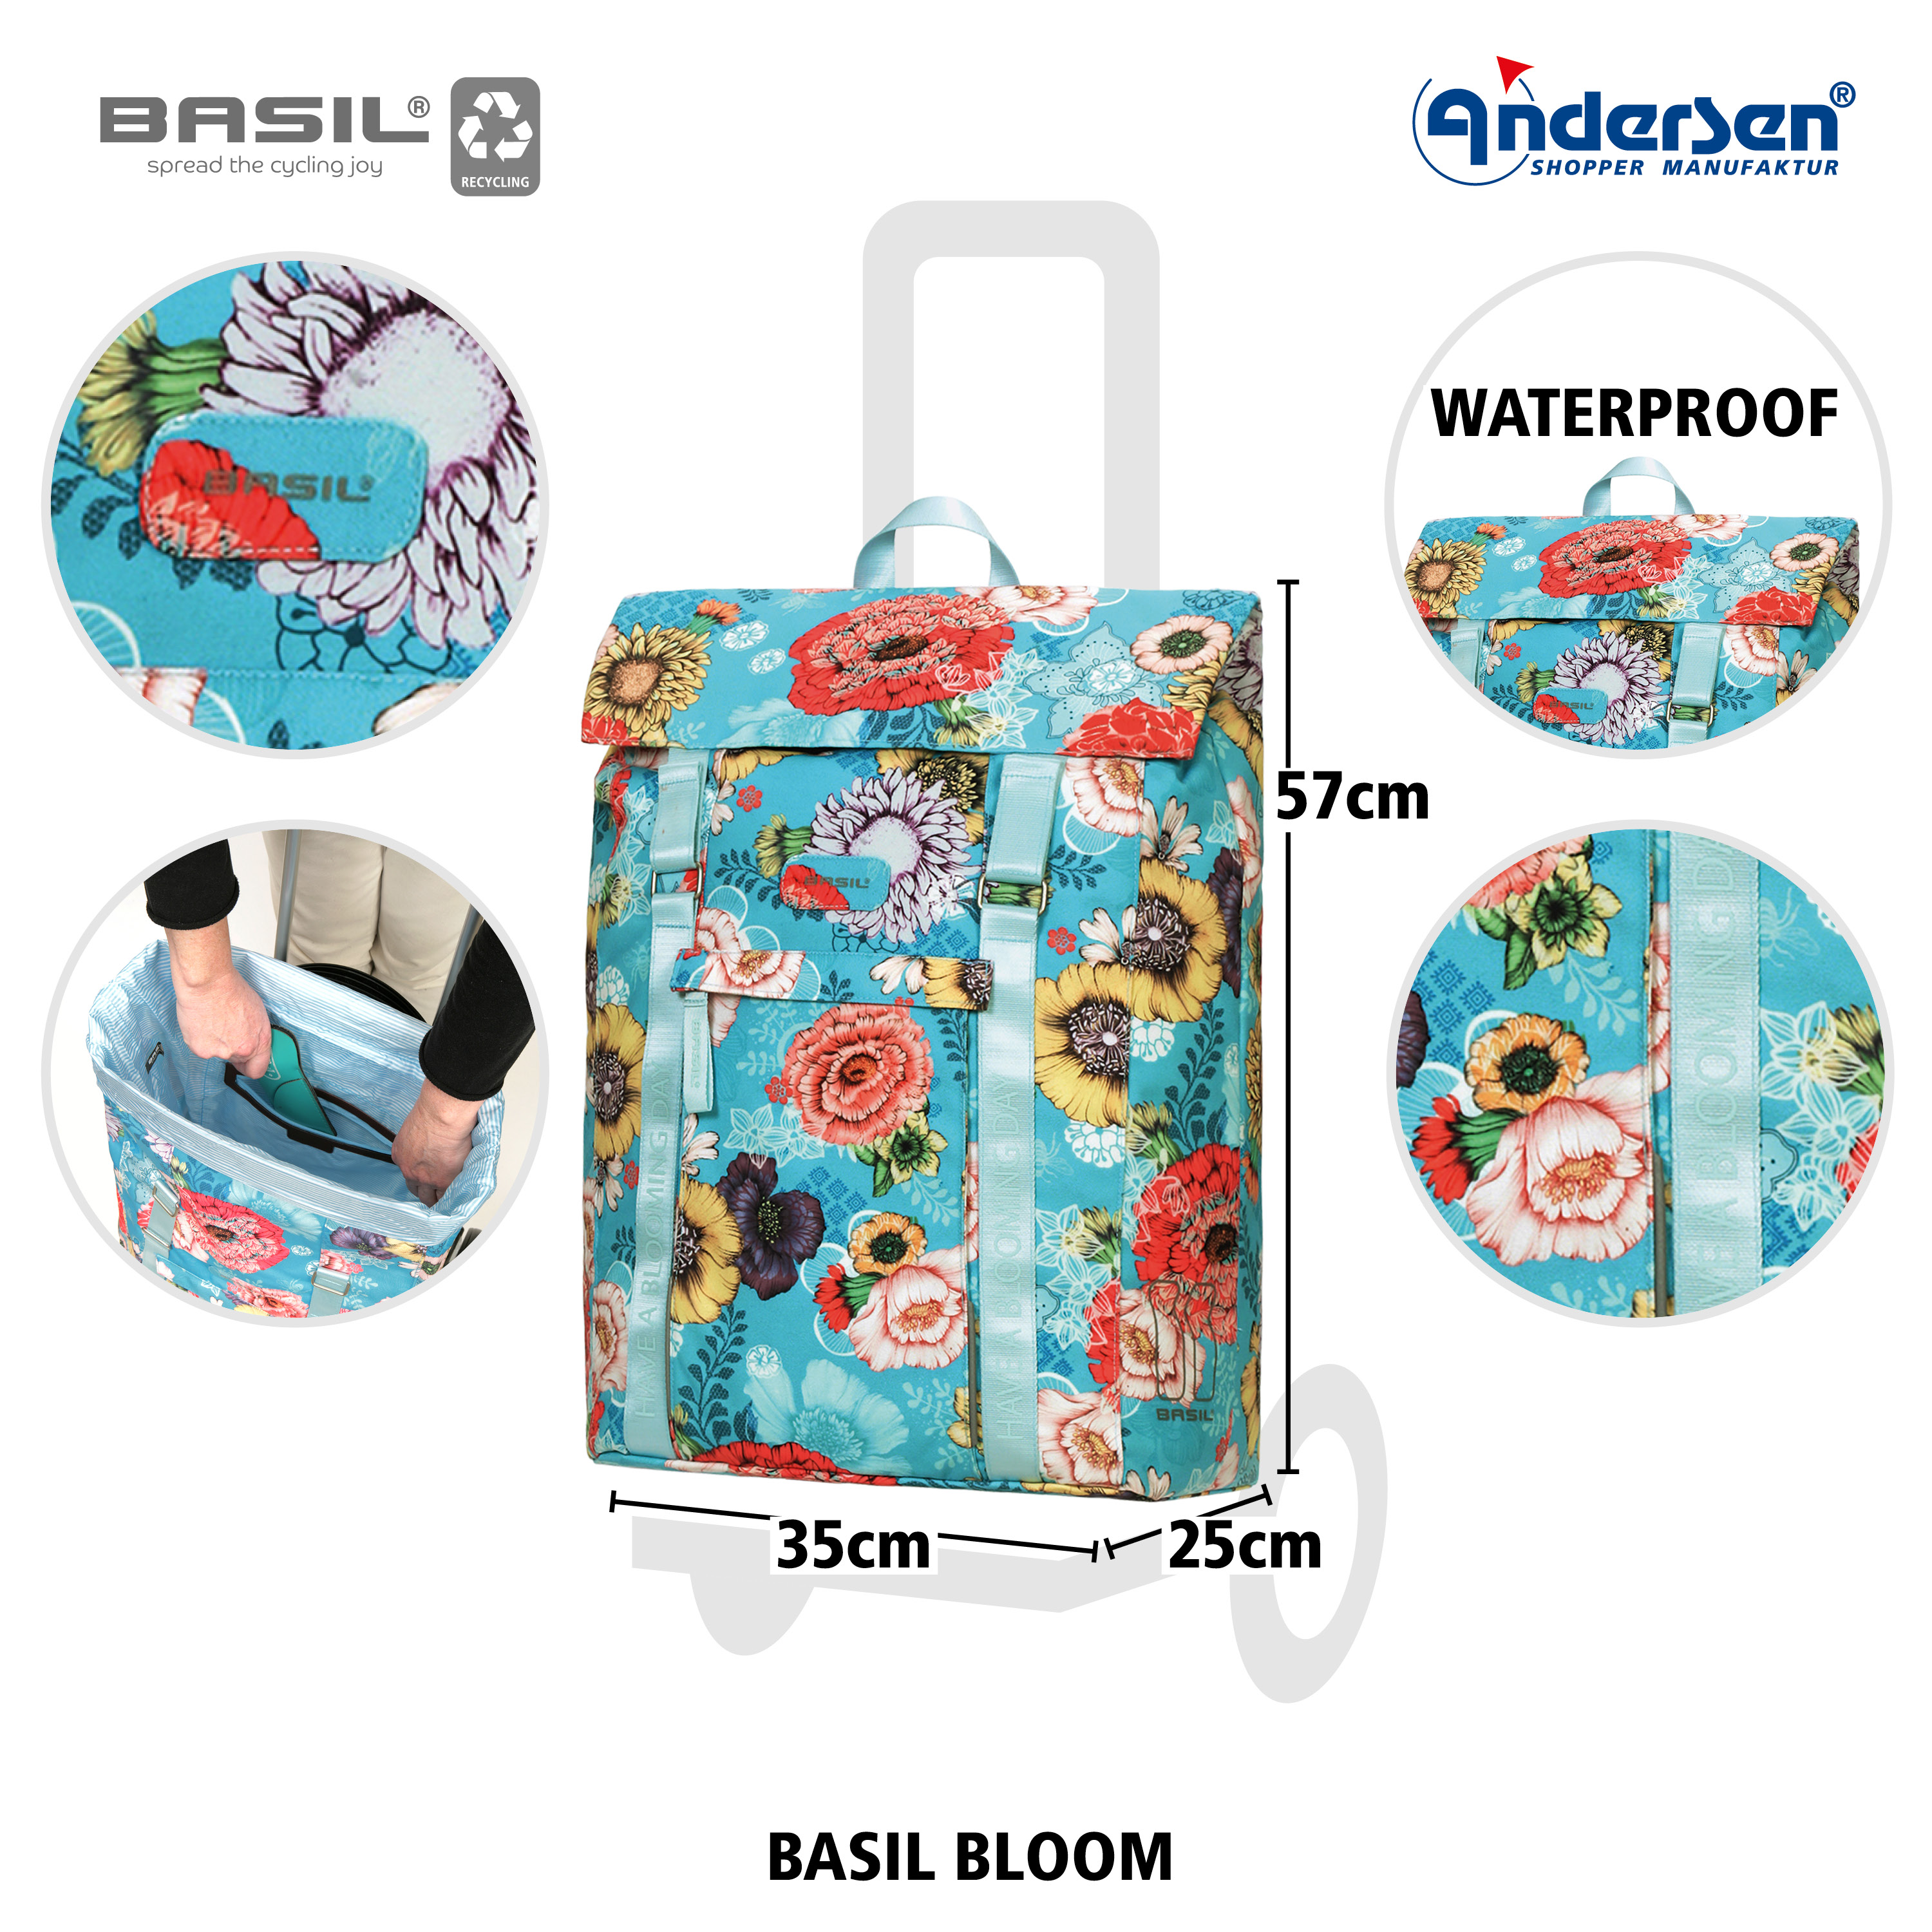 Andersen Unus Shopper Fun mit Tasche Basil Bloom in Blau oder Gelb, Tasche komplett Wasserdicht